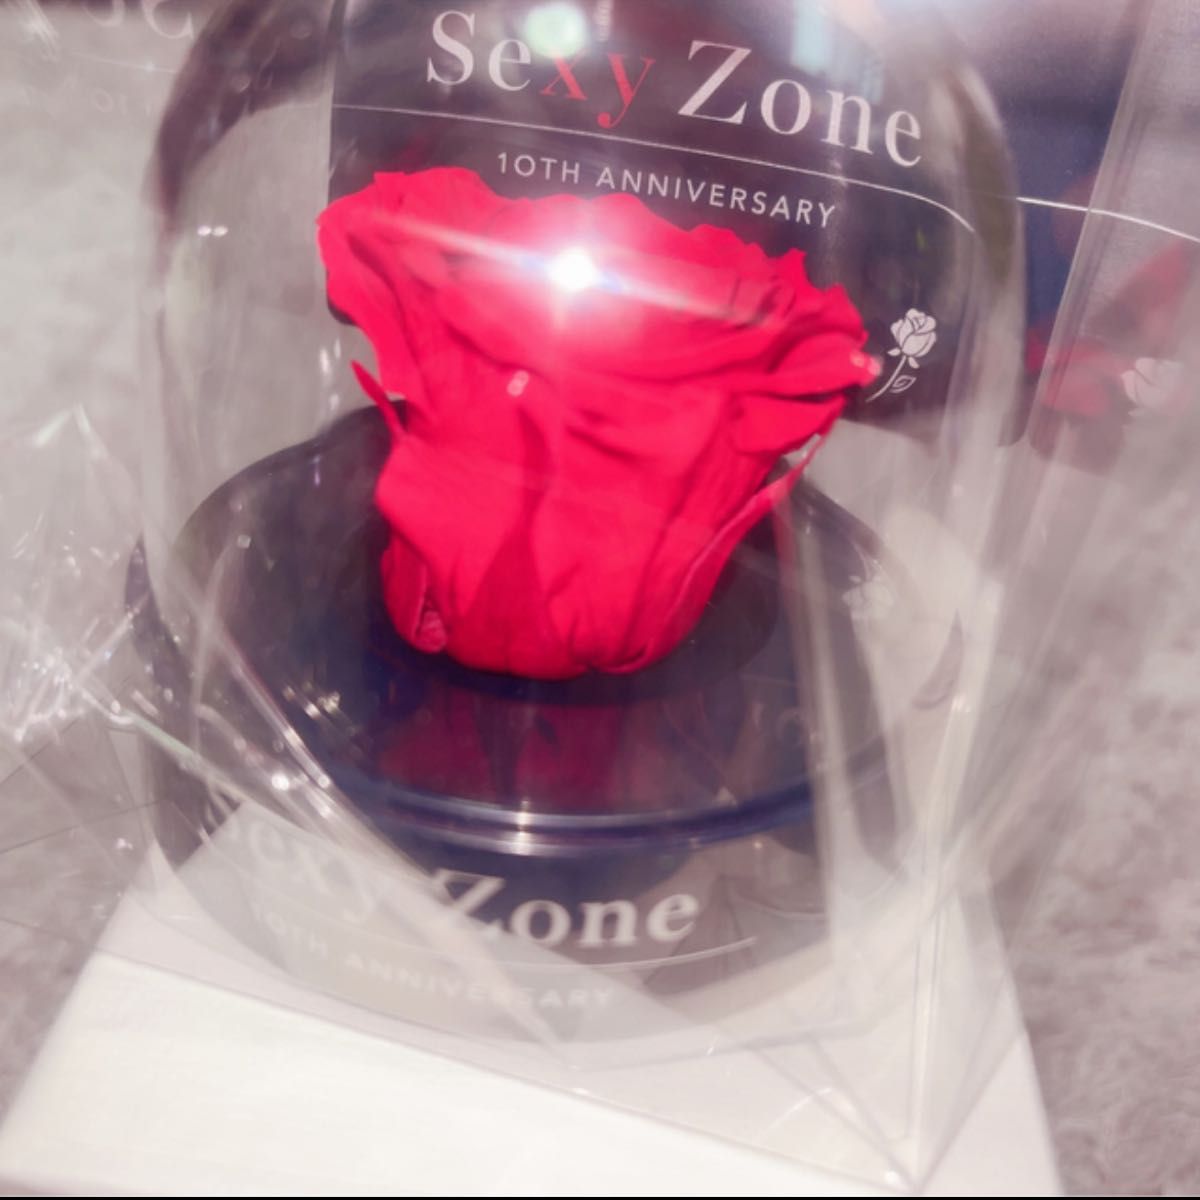 SexyZone 10周年 記念品